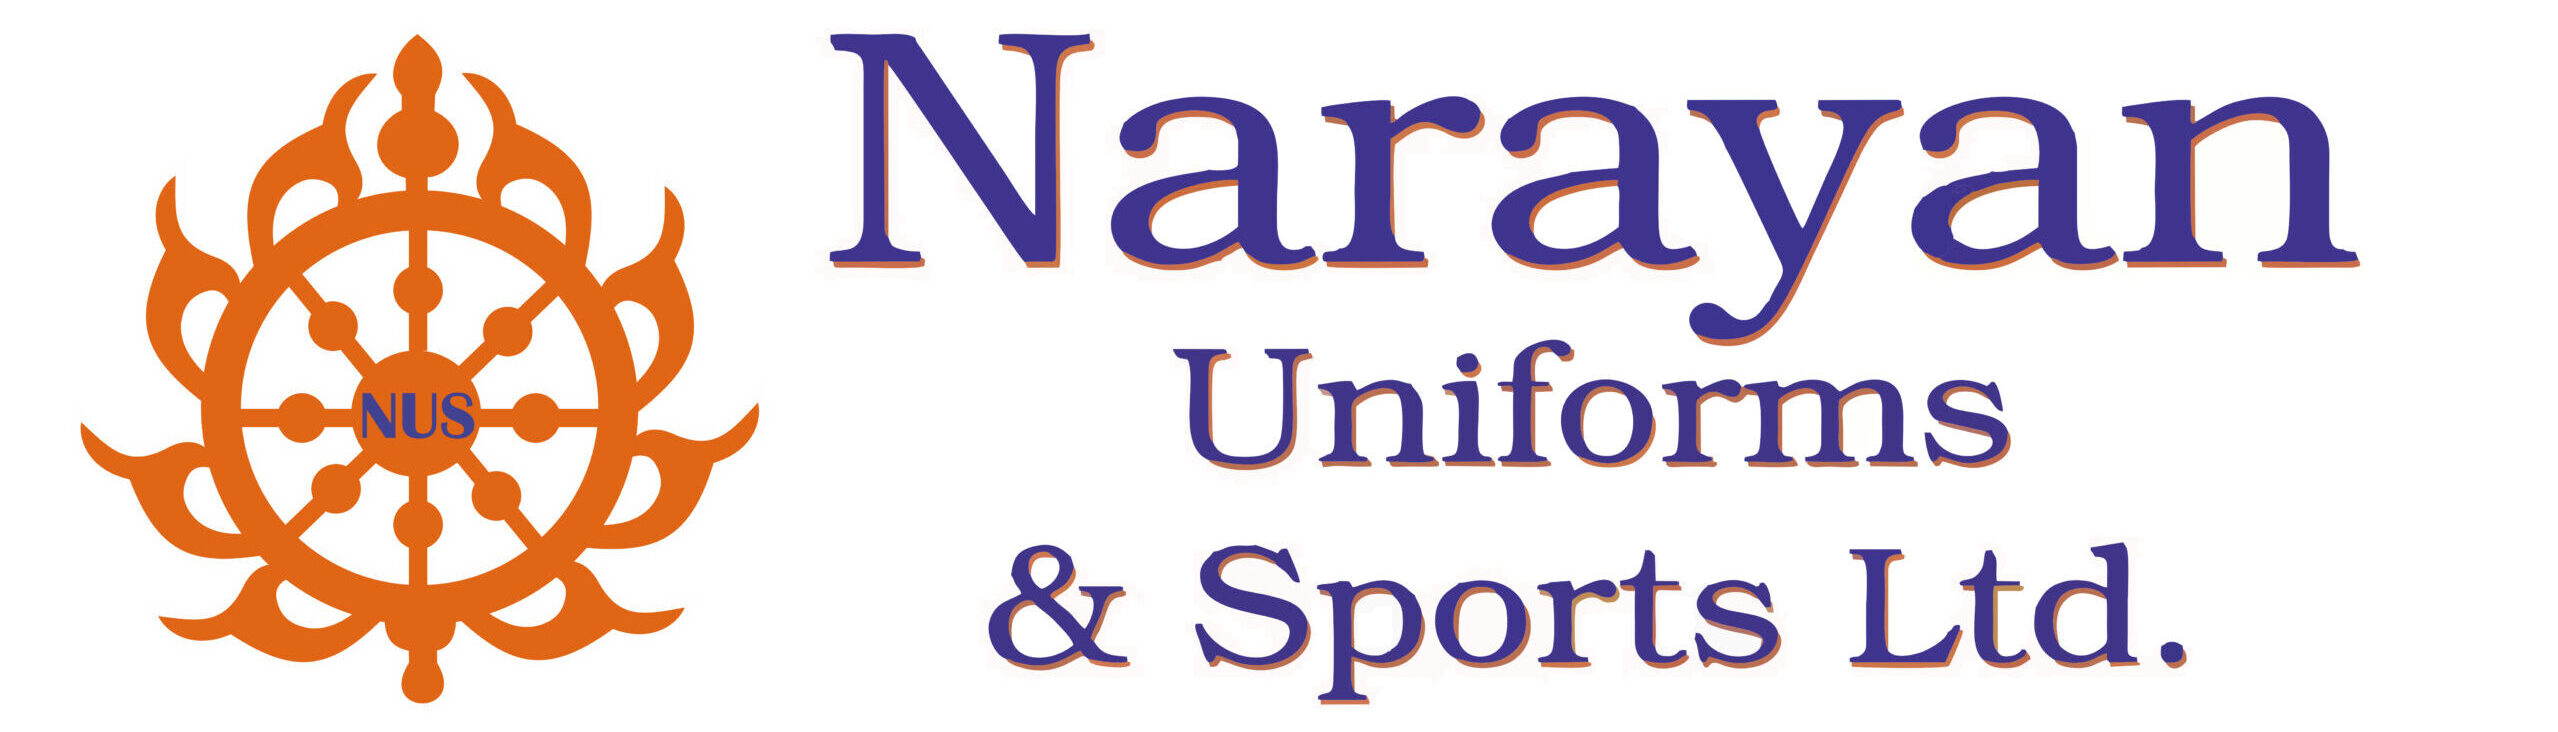 logo narayan